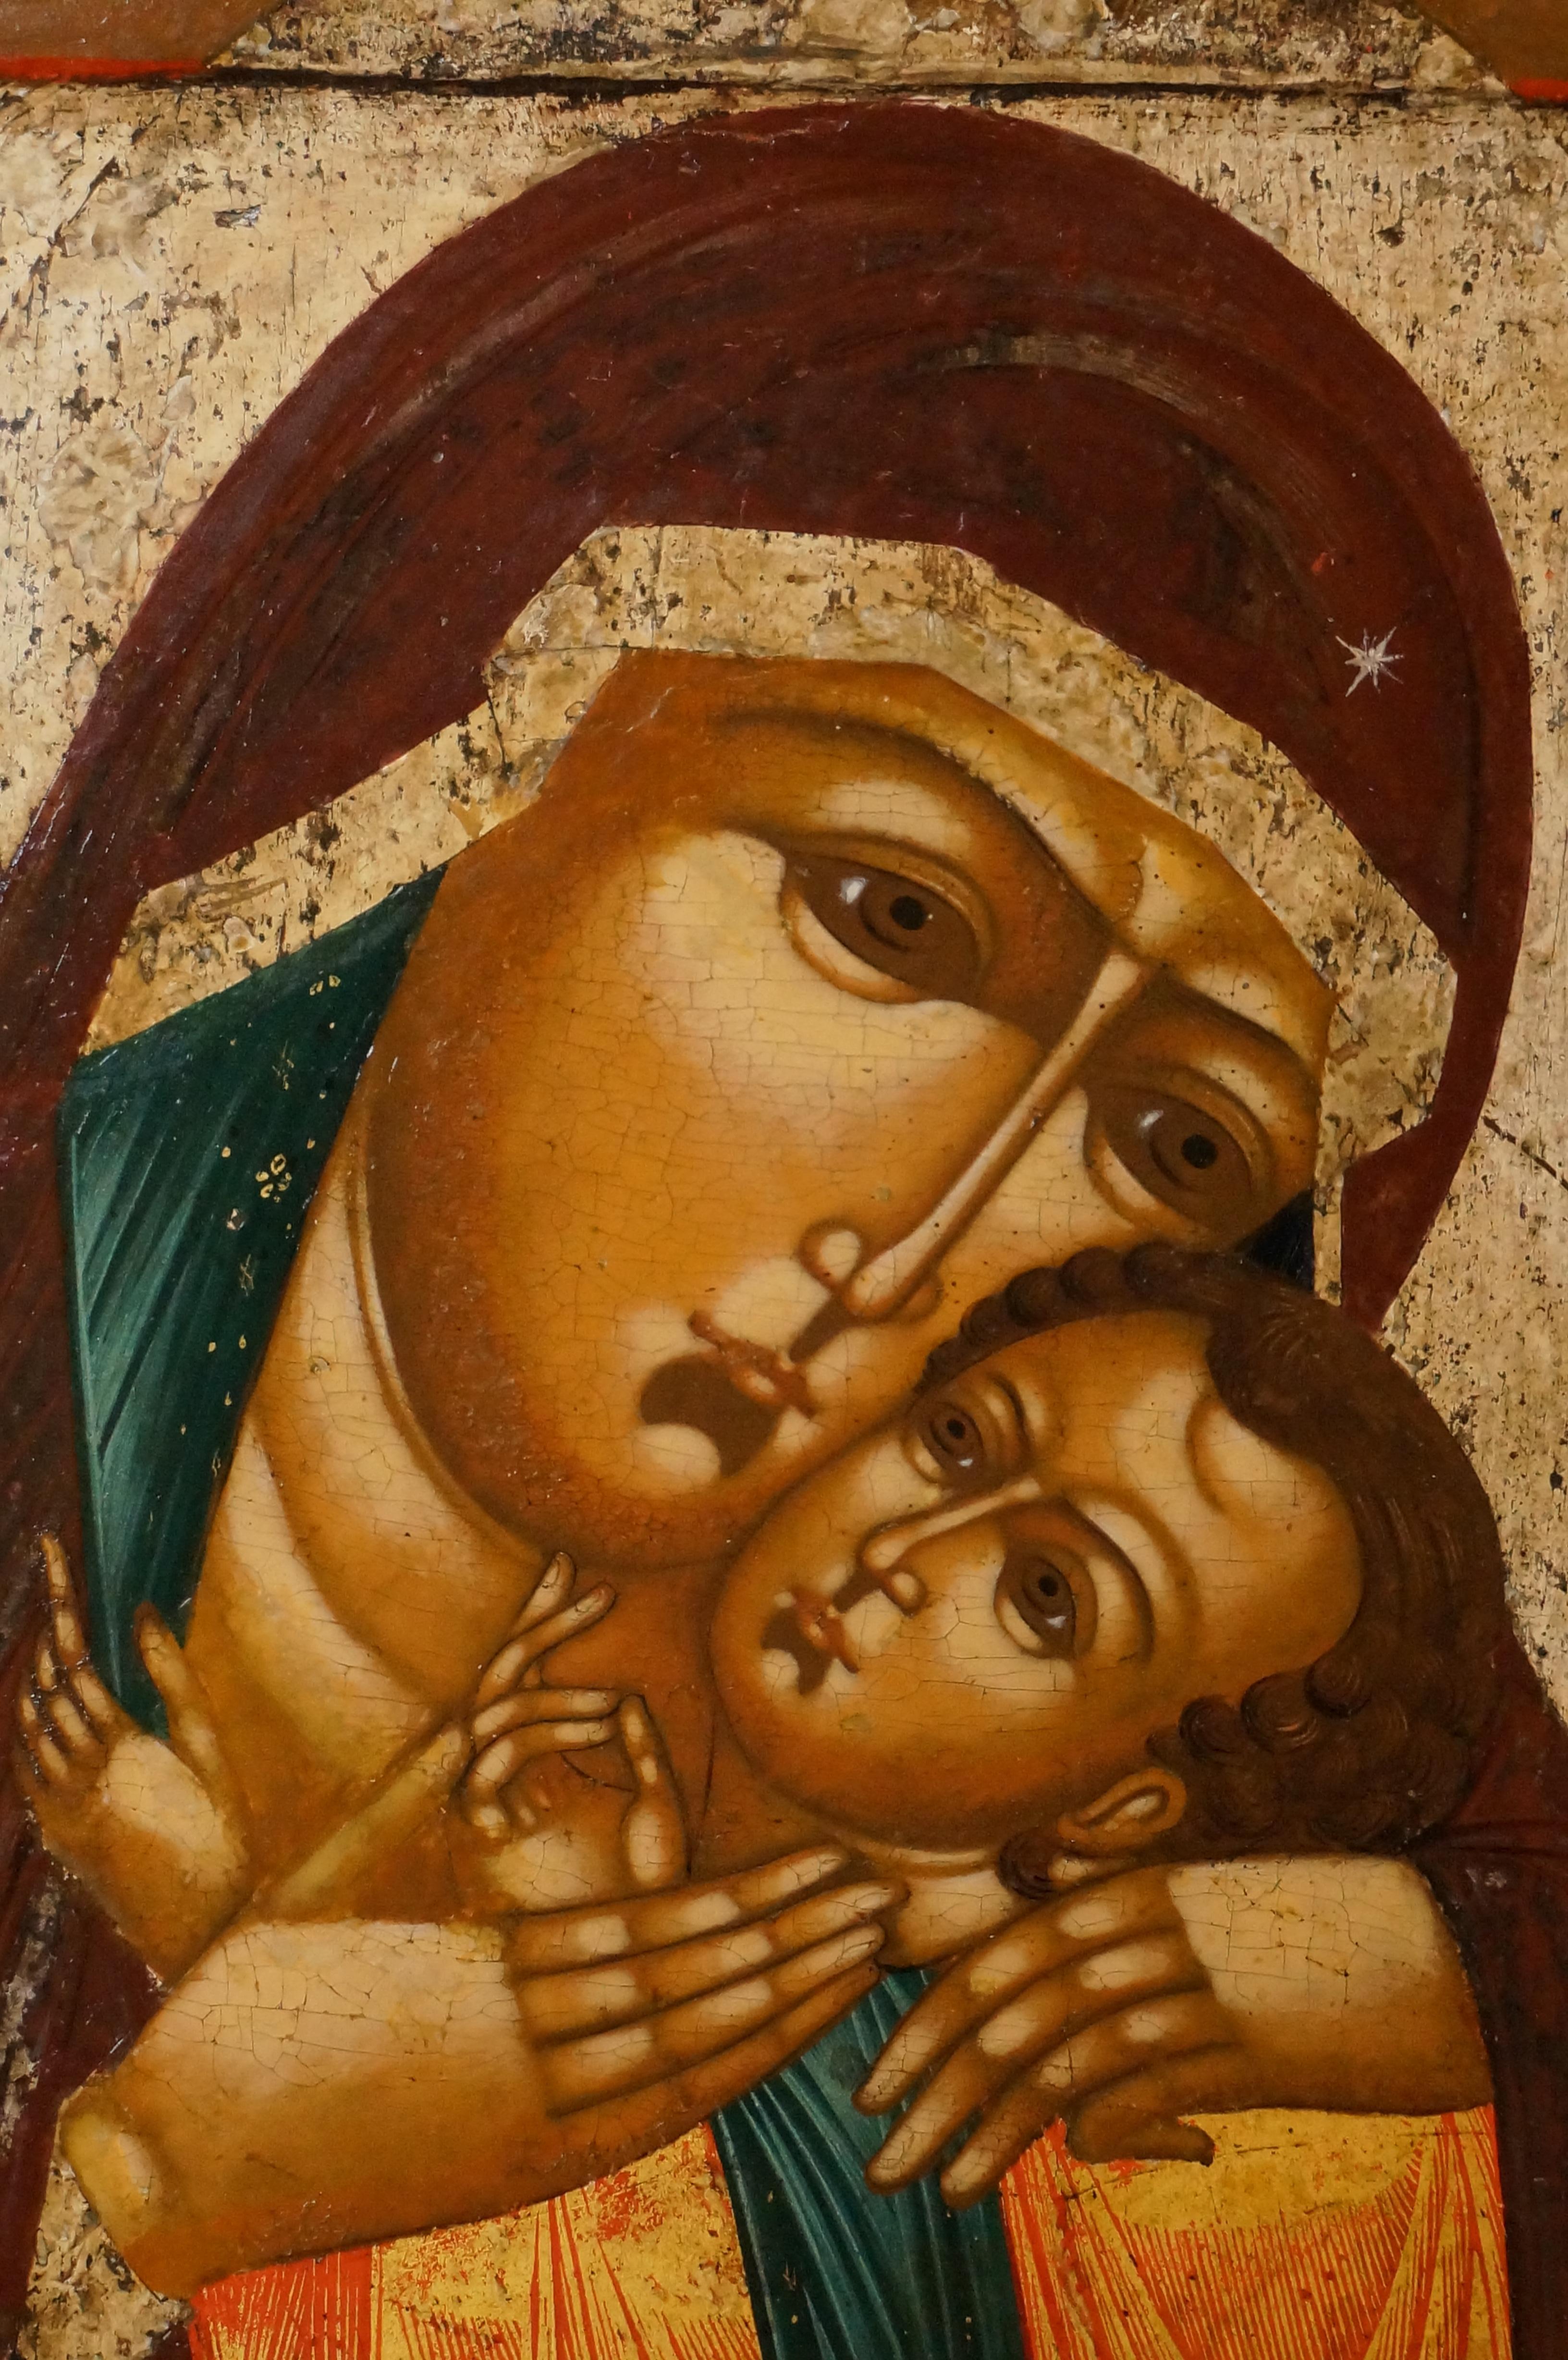 Icône russe provenant d'un atelier de vieux-croyants représentant la Mère de Dieu Kasperovskaja, une variante de la Mère de Dieu de Korsun. 

19ème siècle.

Dimension : 31 x 26,5 cm.

En bon état, quelques retouches mineures
